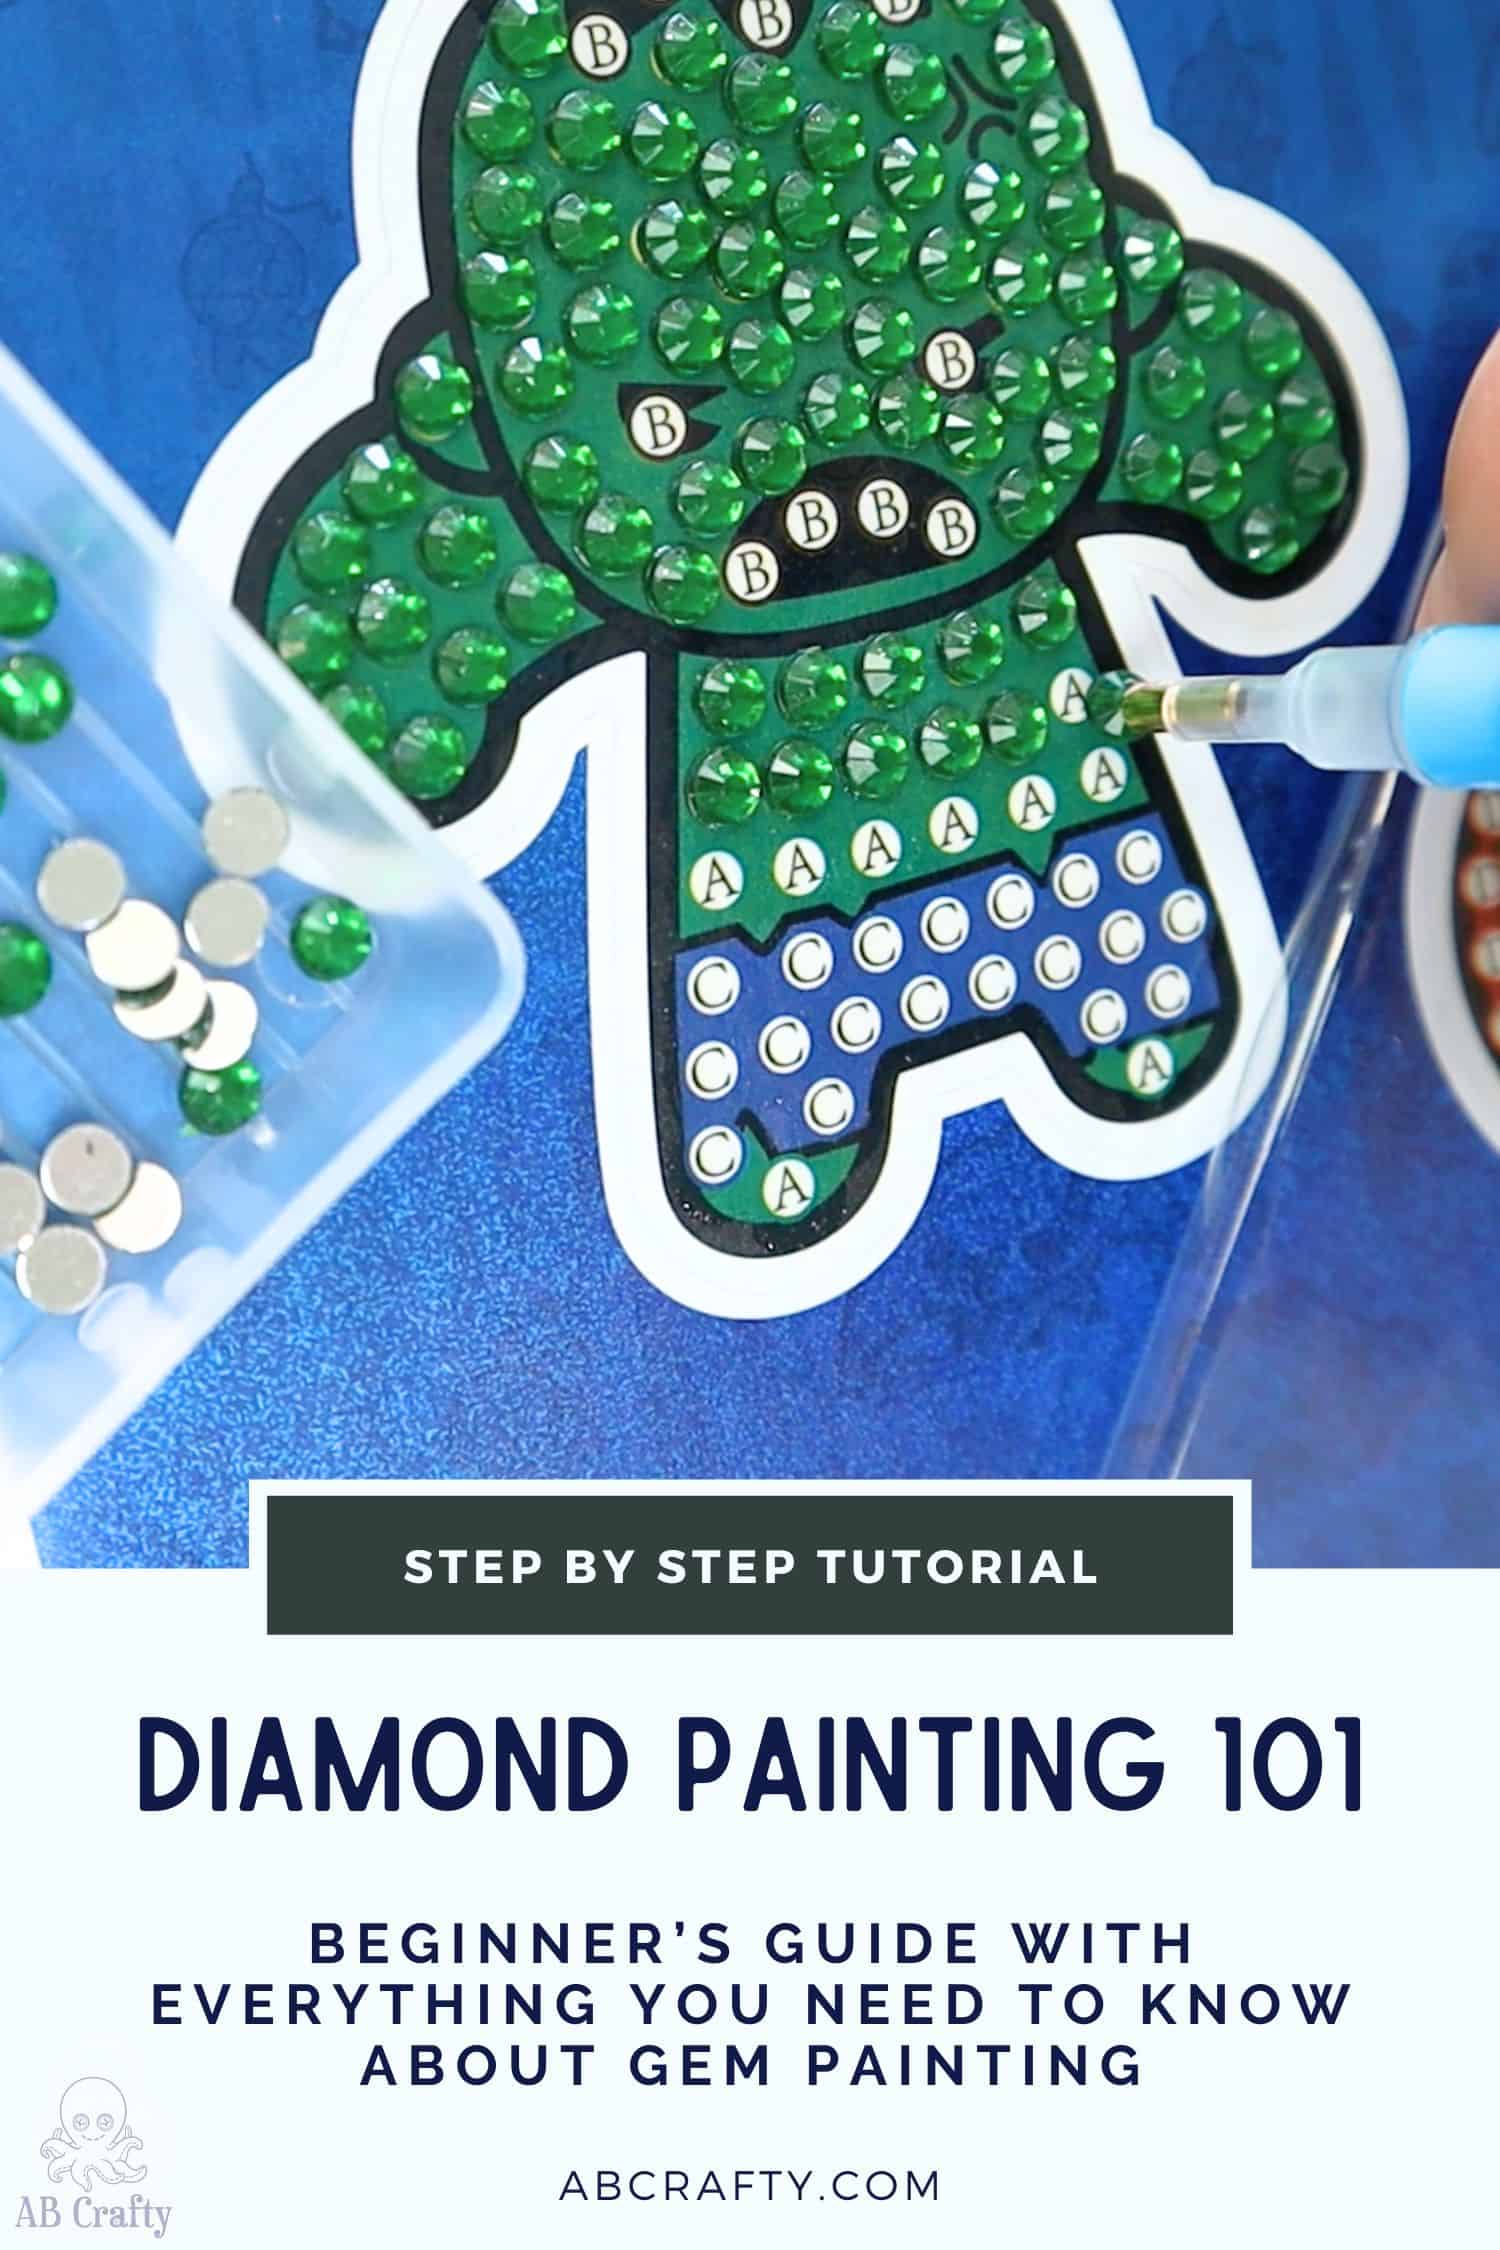 Where to find Pokemon Diamond Paintings. : r/diamondpainting